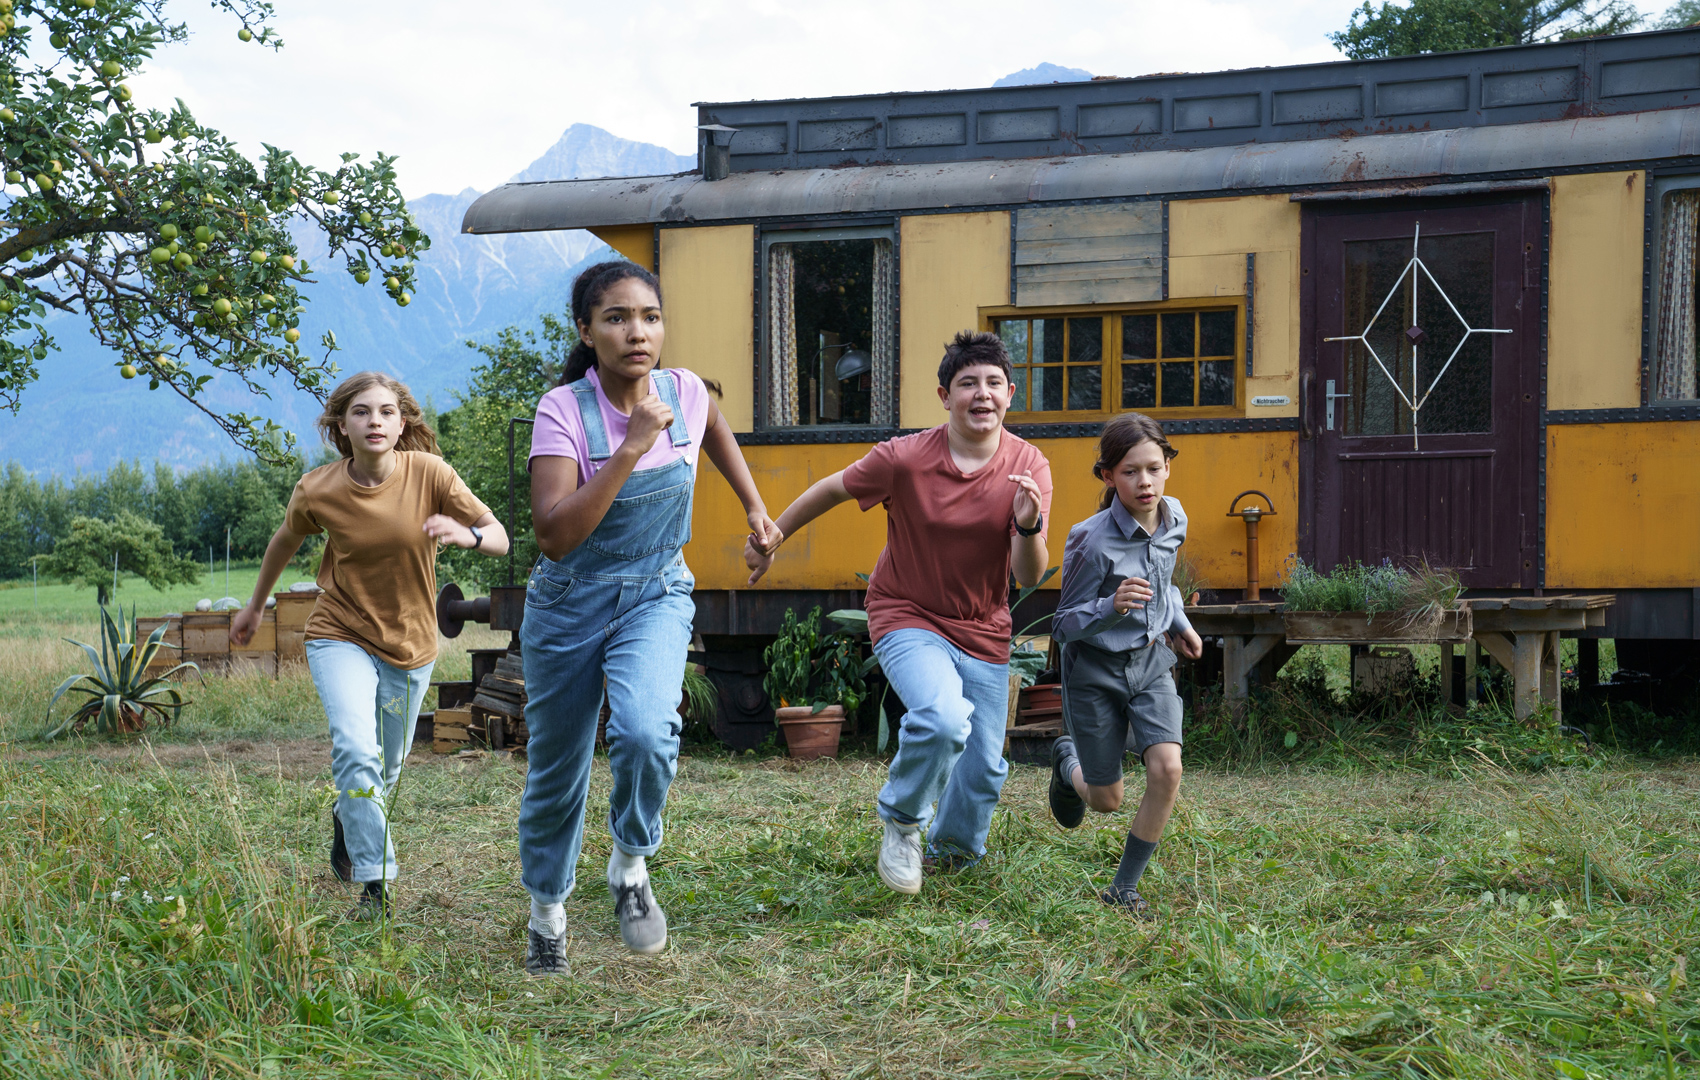 Vier Kinder auf einer Wiese rennen in Richtung des Bildvordergrunds. Im Hintergrund sieht man einen alten Zugwagon, der auf einer Wiese in einem großen Garten steht.